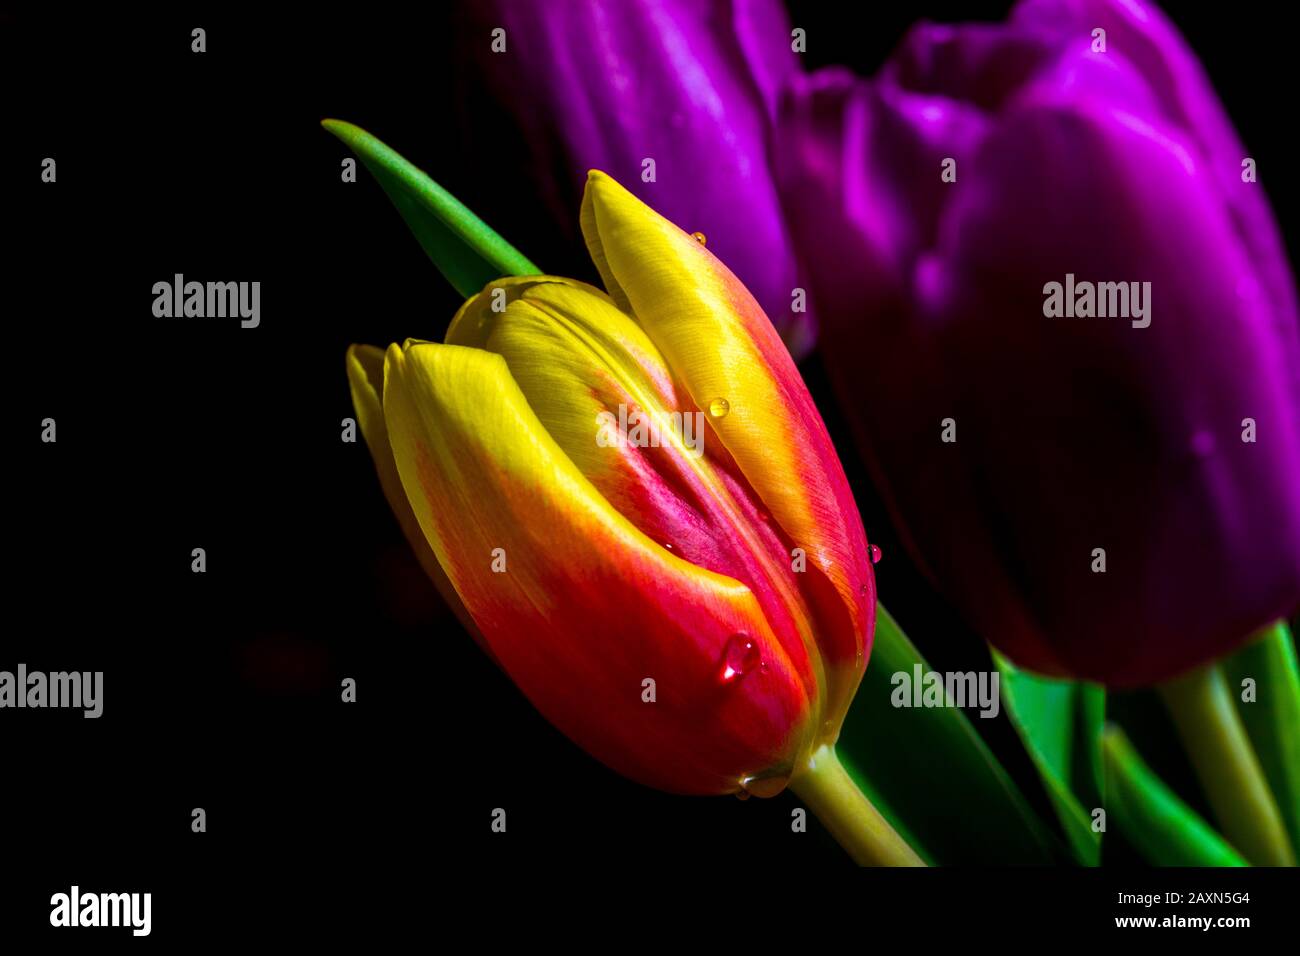 Tulipán rojo y amarillo con una gota de agua en él, tulipán púrpura en el fondo negro Foto de stock